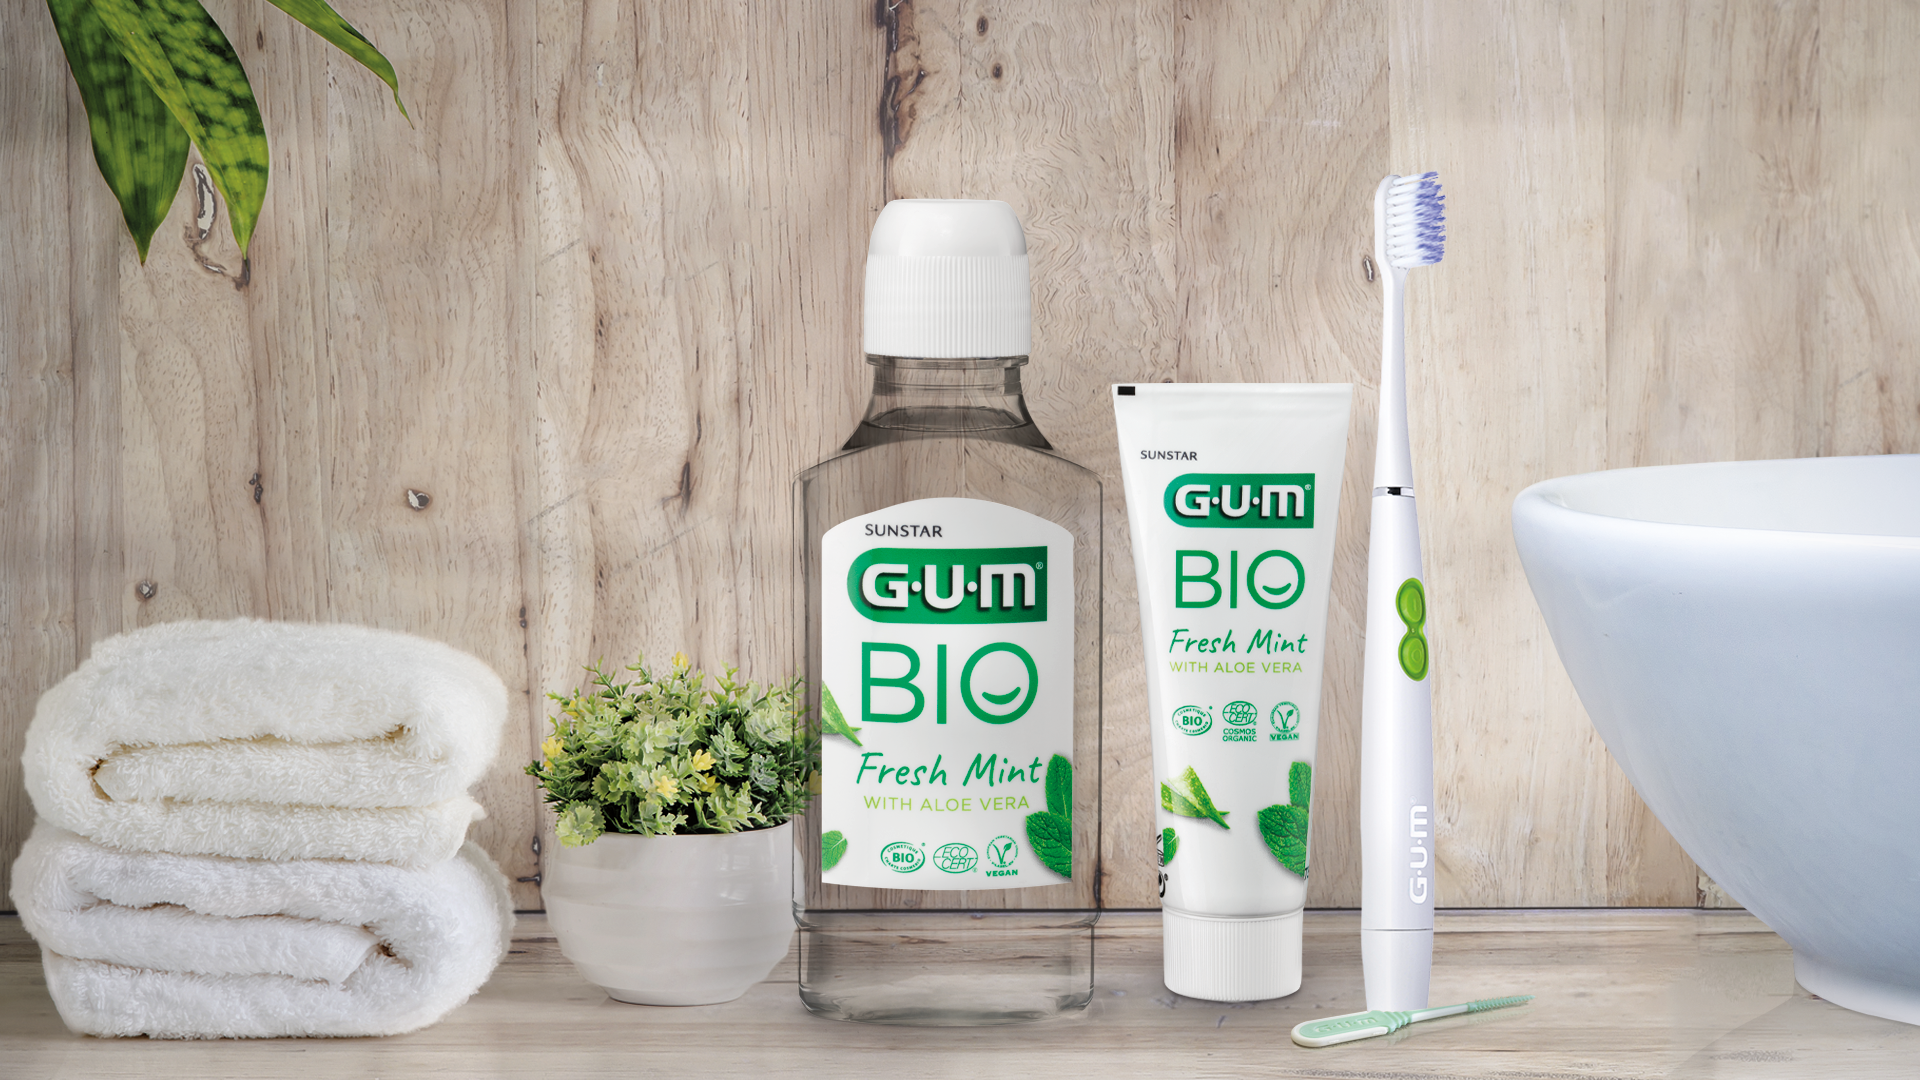 Collutorio GUM BIO, dentifricio GUM BIO e spazzolino SONIC Daily in bagno per una cura quotidiana 